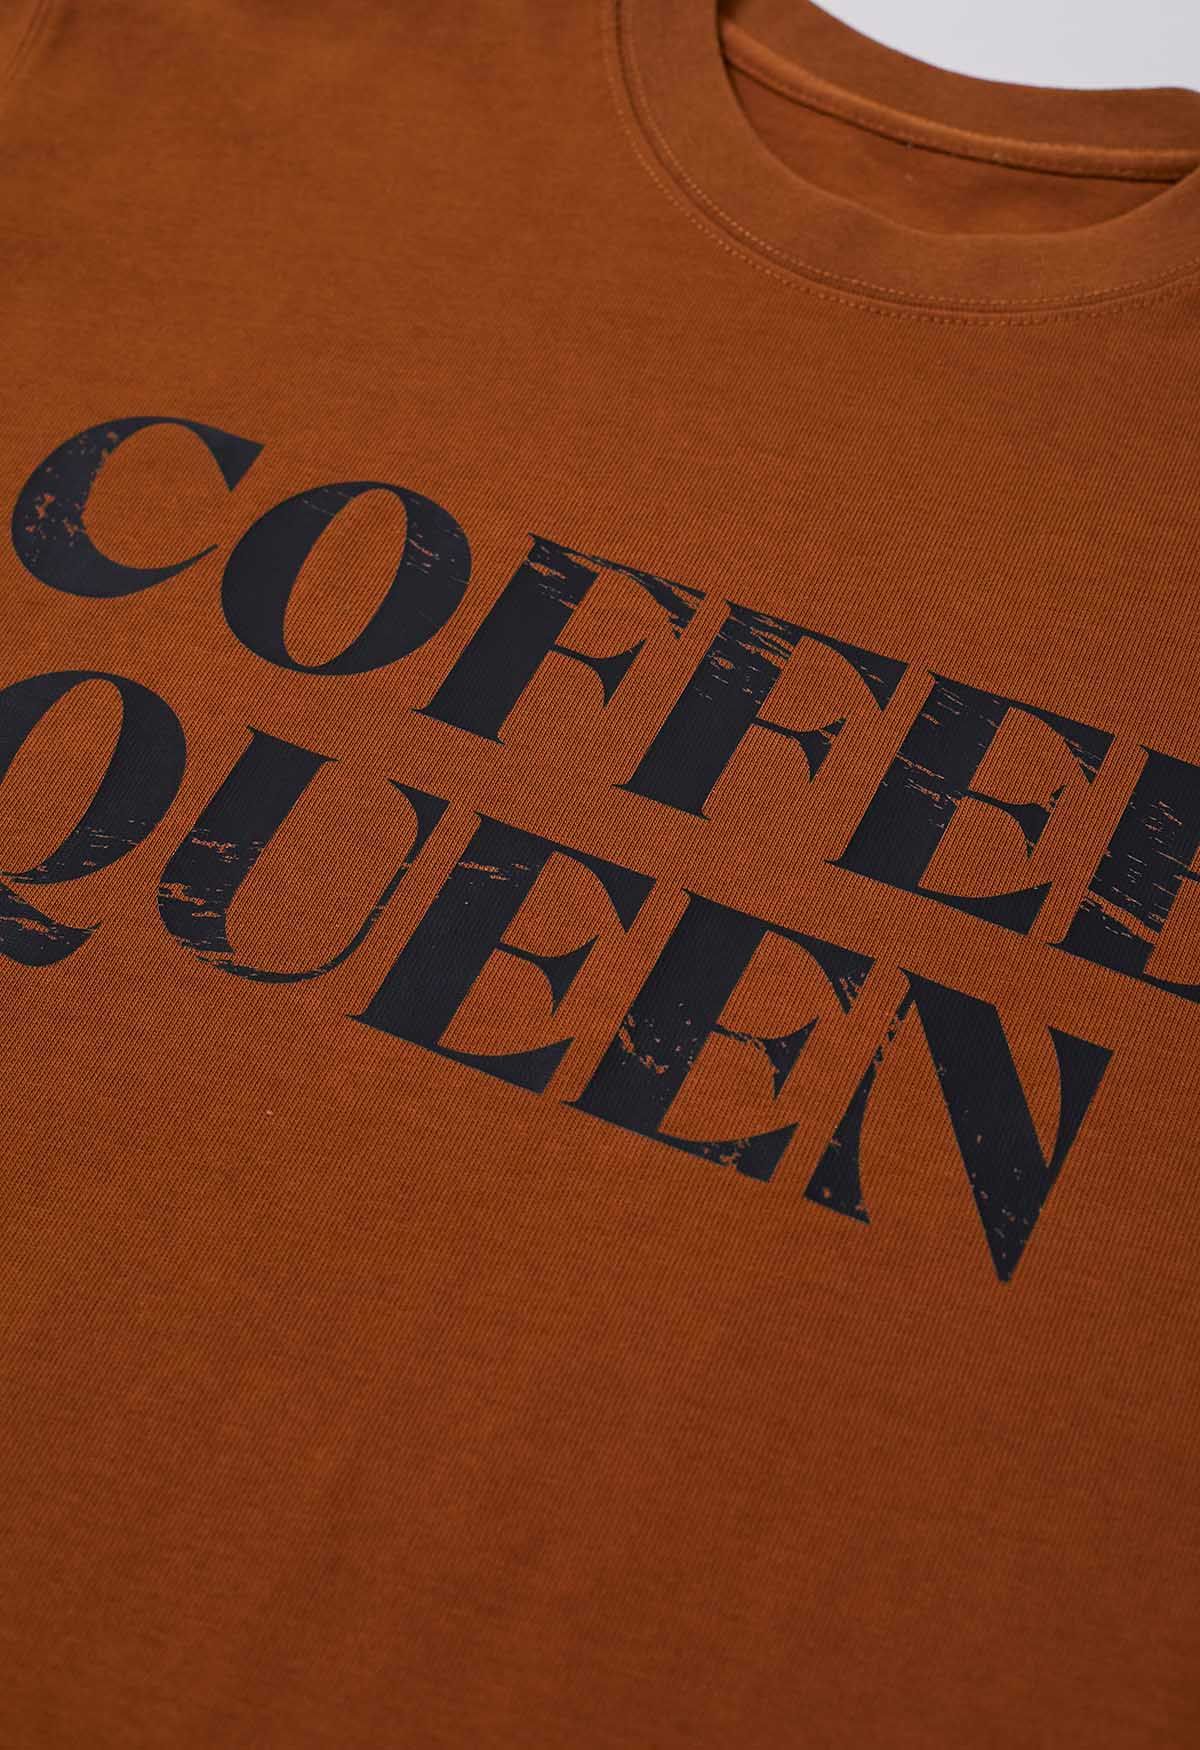 Camiseta de algodón estampada Coffee Queen en color caramelo